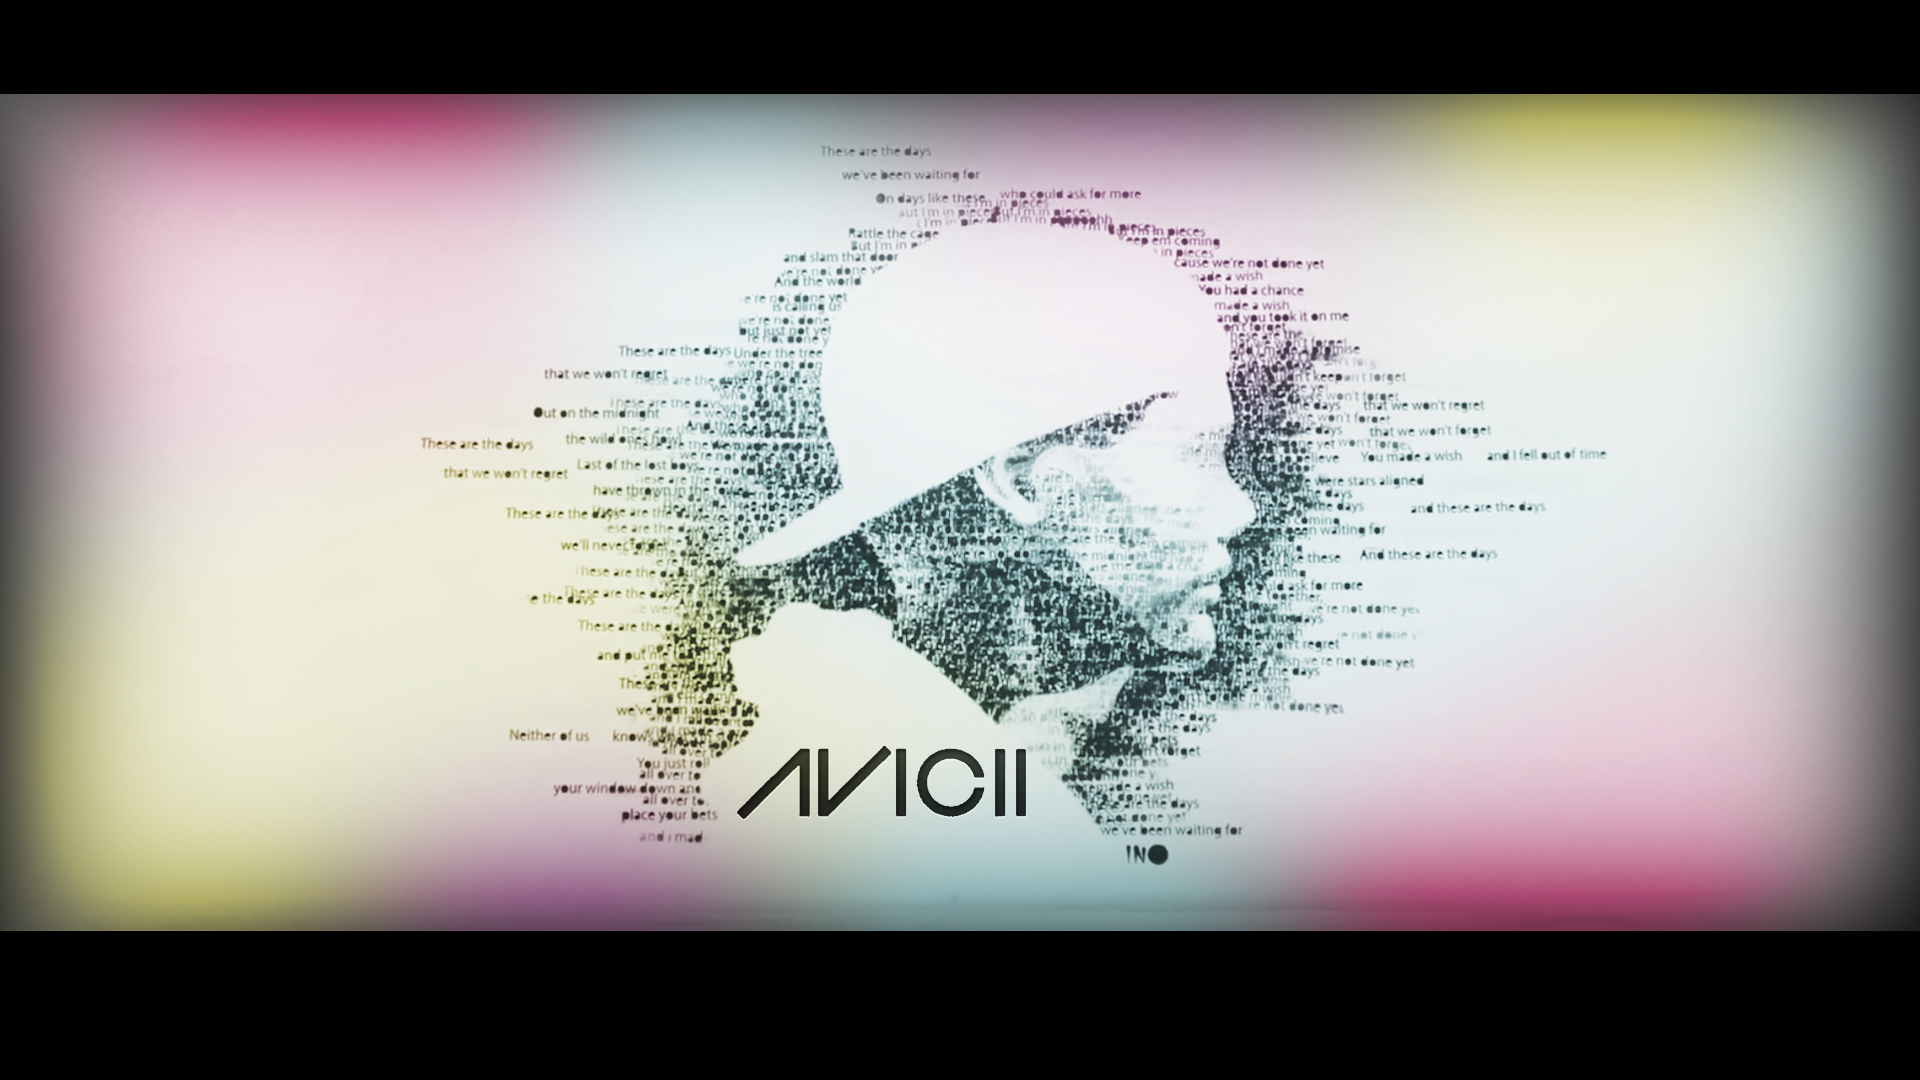 Avicii wallpaper by LegitDezign on DeviantArt